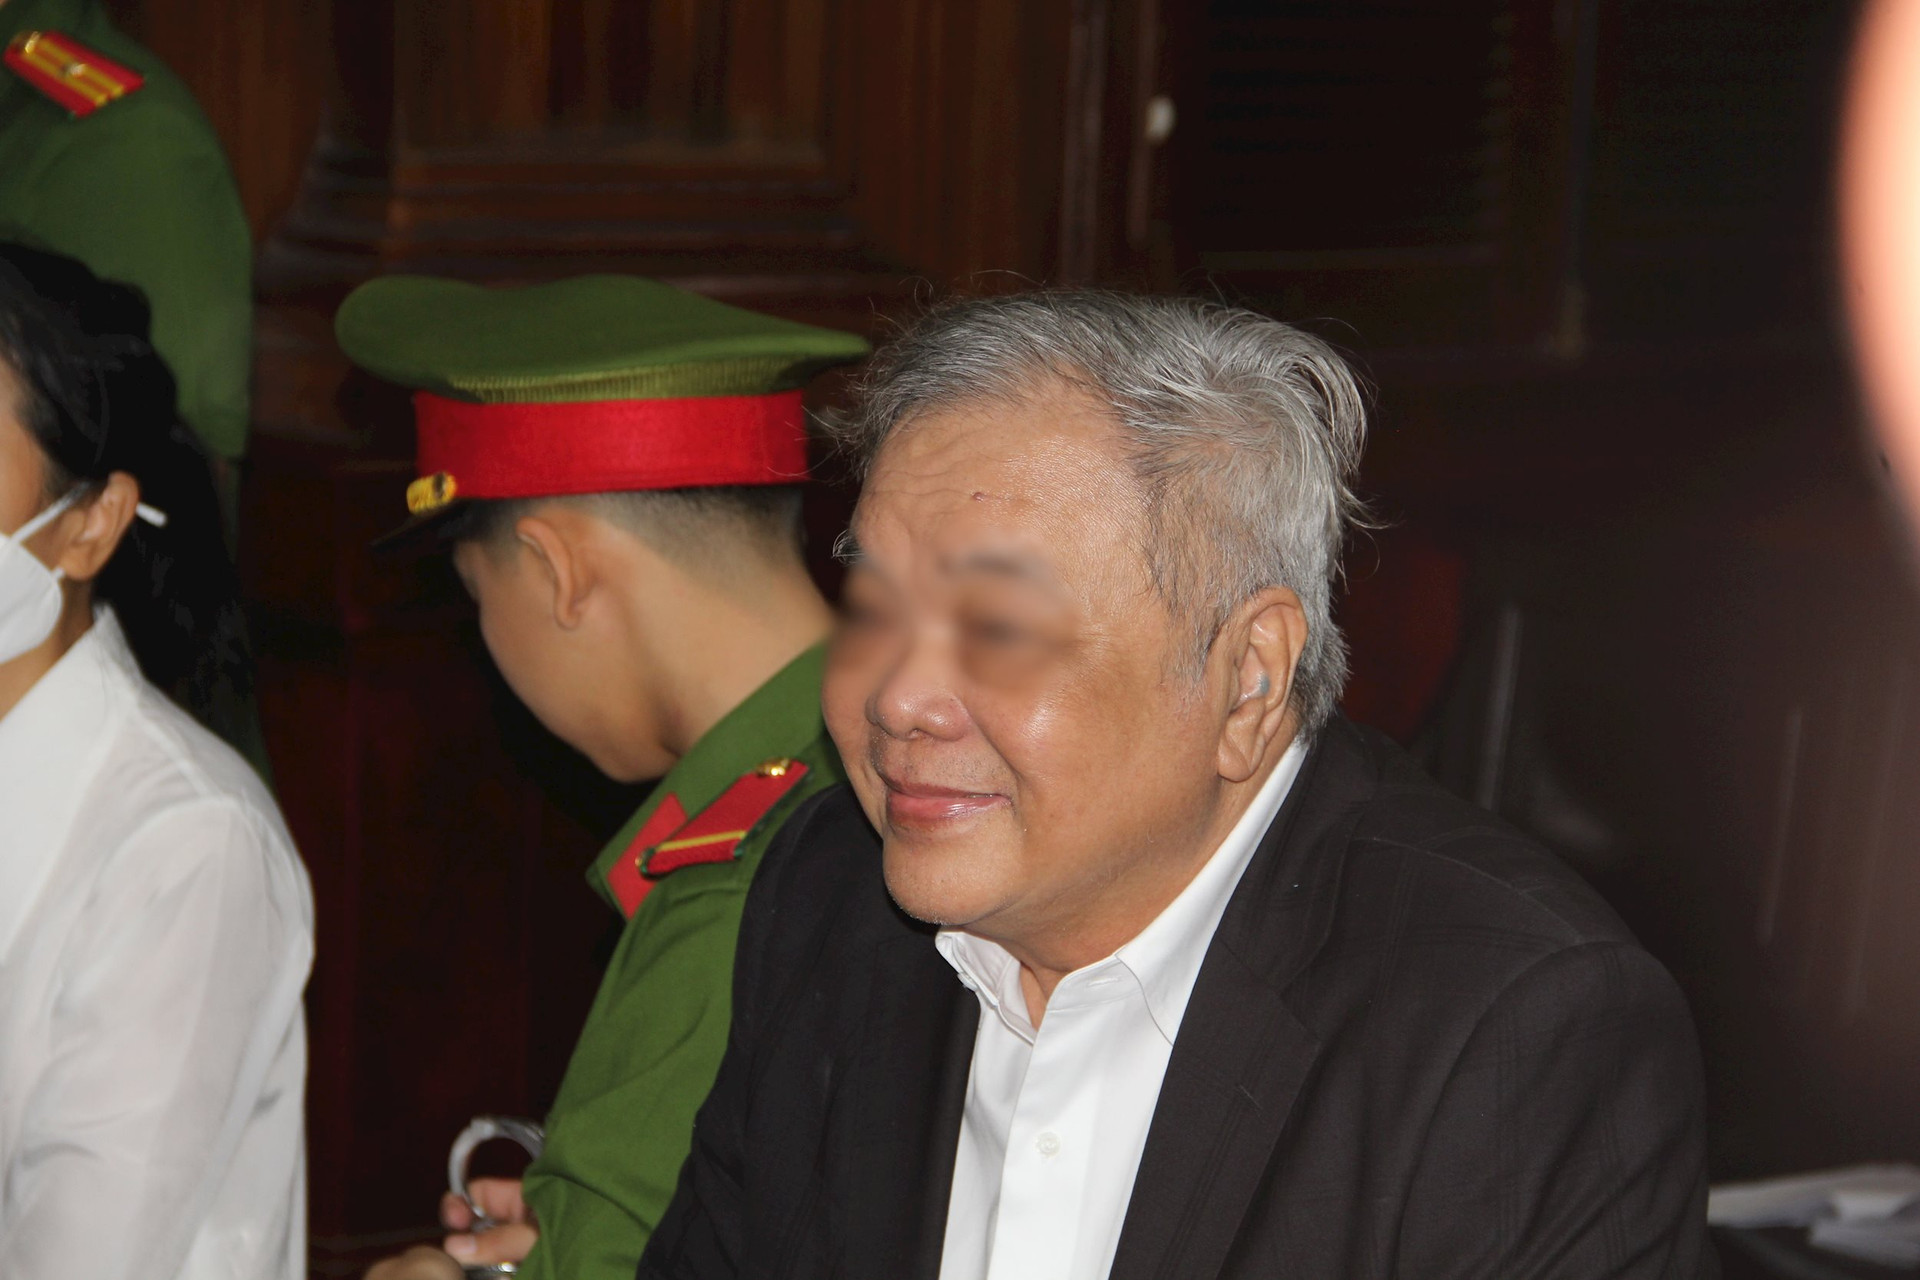             Bị cáo Trần Quí Thanh đồng ý nhận lại tiền và hủy các hợp đồng chuyển nhượng    